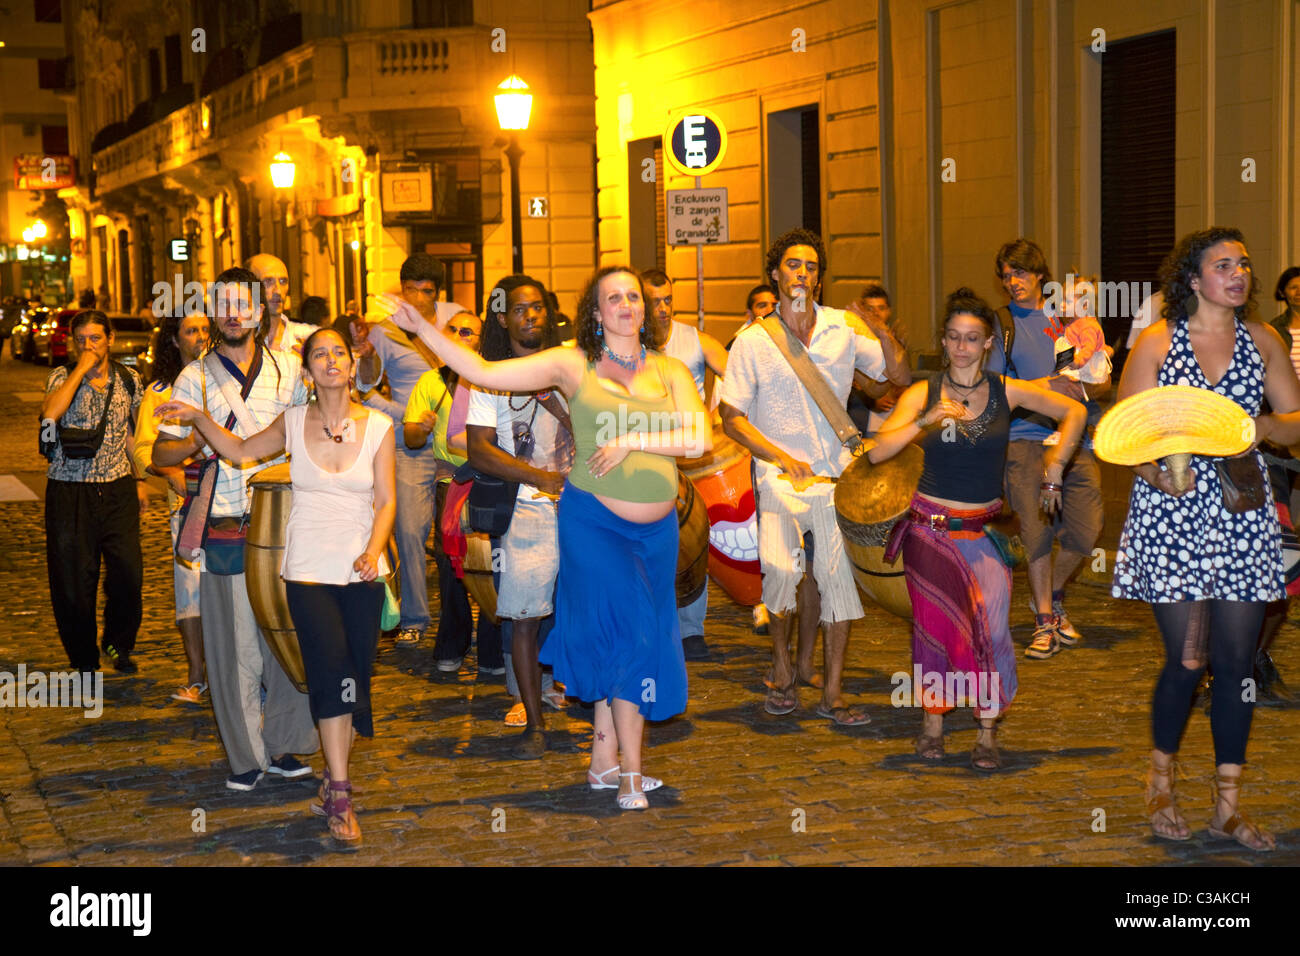 Défilé de gens et de danse le long de la rue Defensa dans le barrio de San Telmo de Buenos Aires, Argentine. Banque D'Images